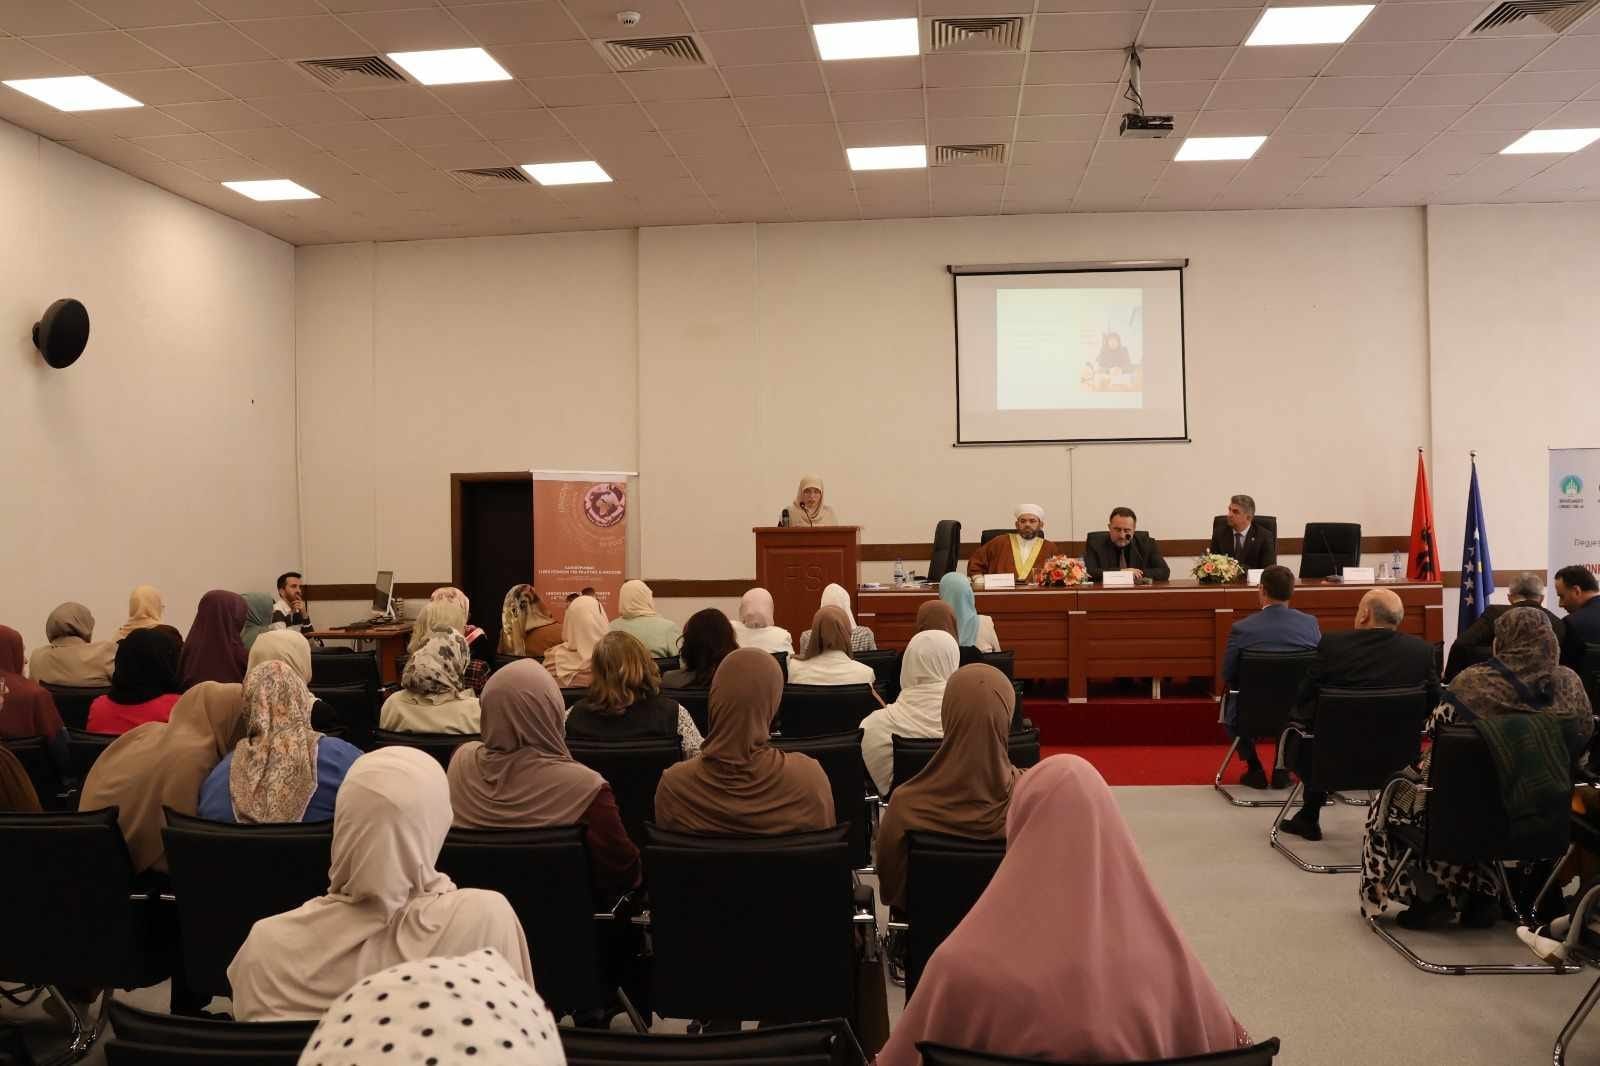 اشتمل المؤتمر على ثماني ندوات في موضوعات مختلفة تطرقت لأهم وأبرز الموضوعات التي تتعلق بالمجتمع المسلم الألباني